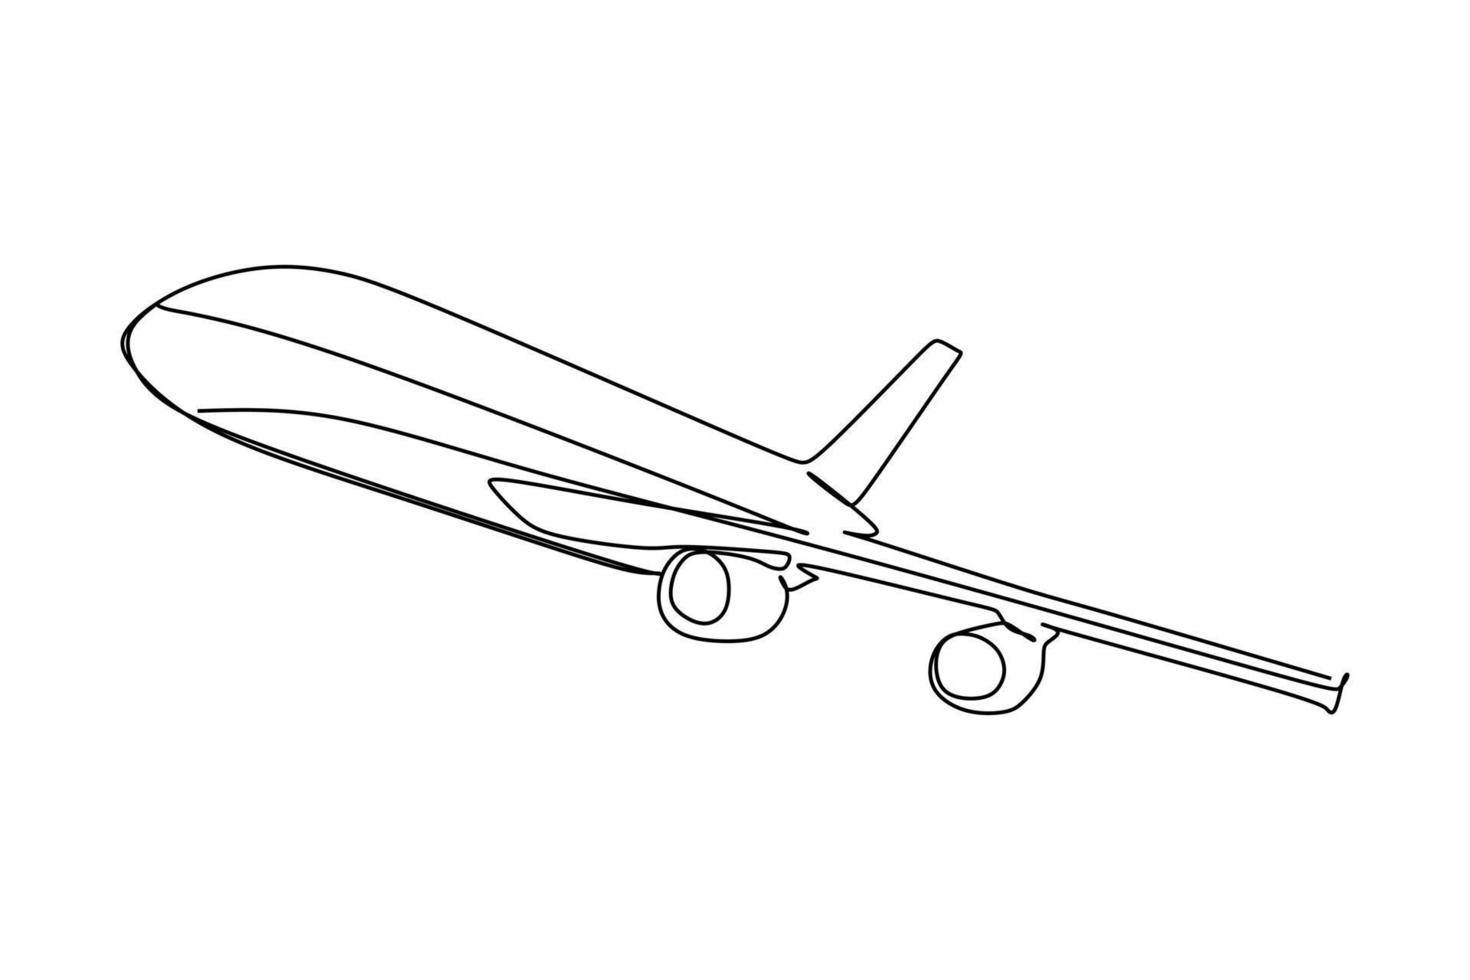 einzelne fortlaufende Linienzeichnung eines fliegenden und kletternden Flugzeugs. handzeichnungsstil für transportkonzept vektor